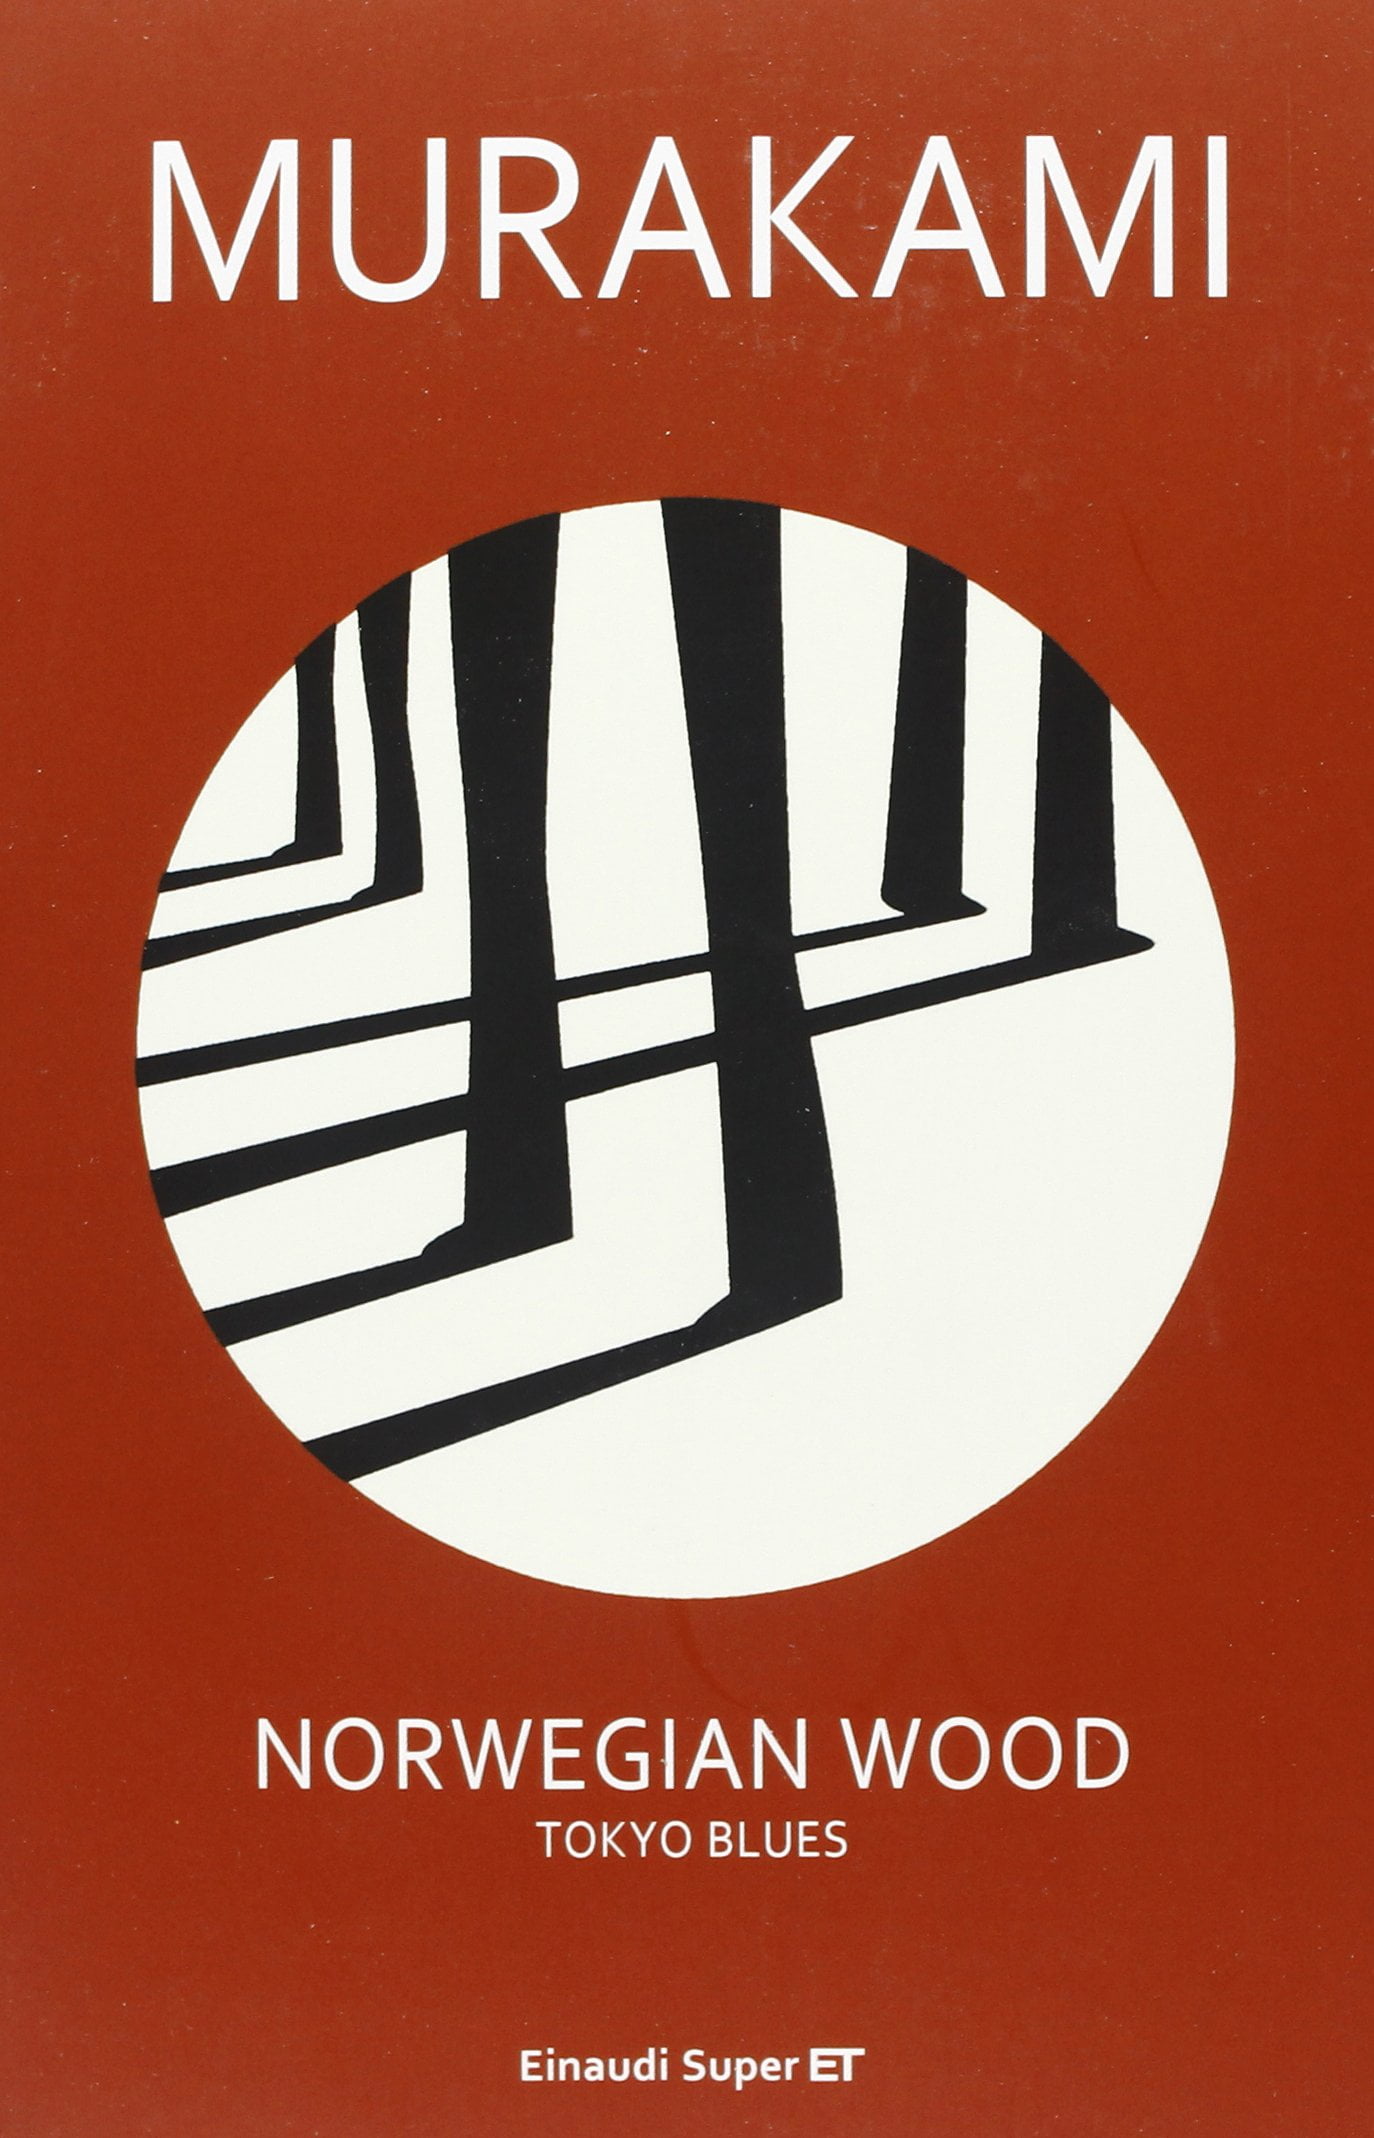 “Norwegian wood” – Haruki Murakami